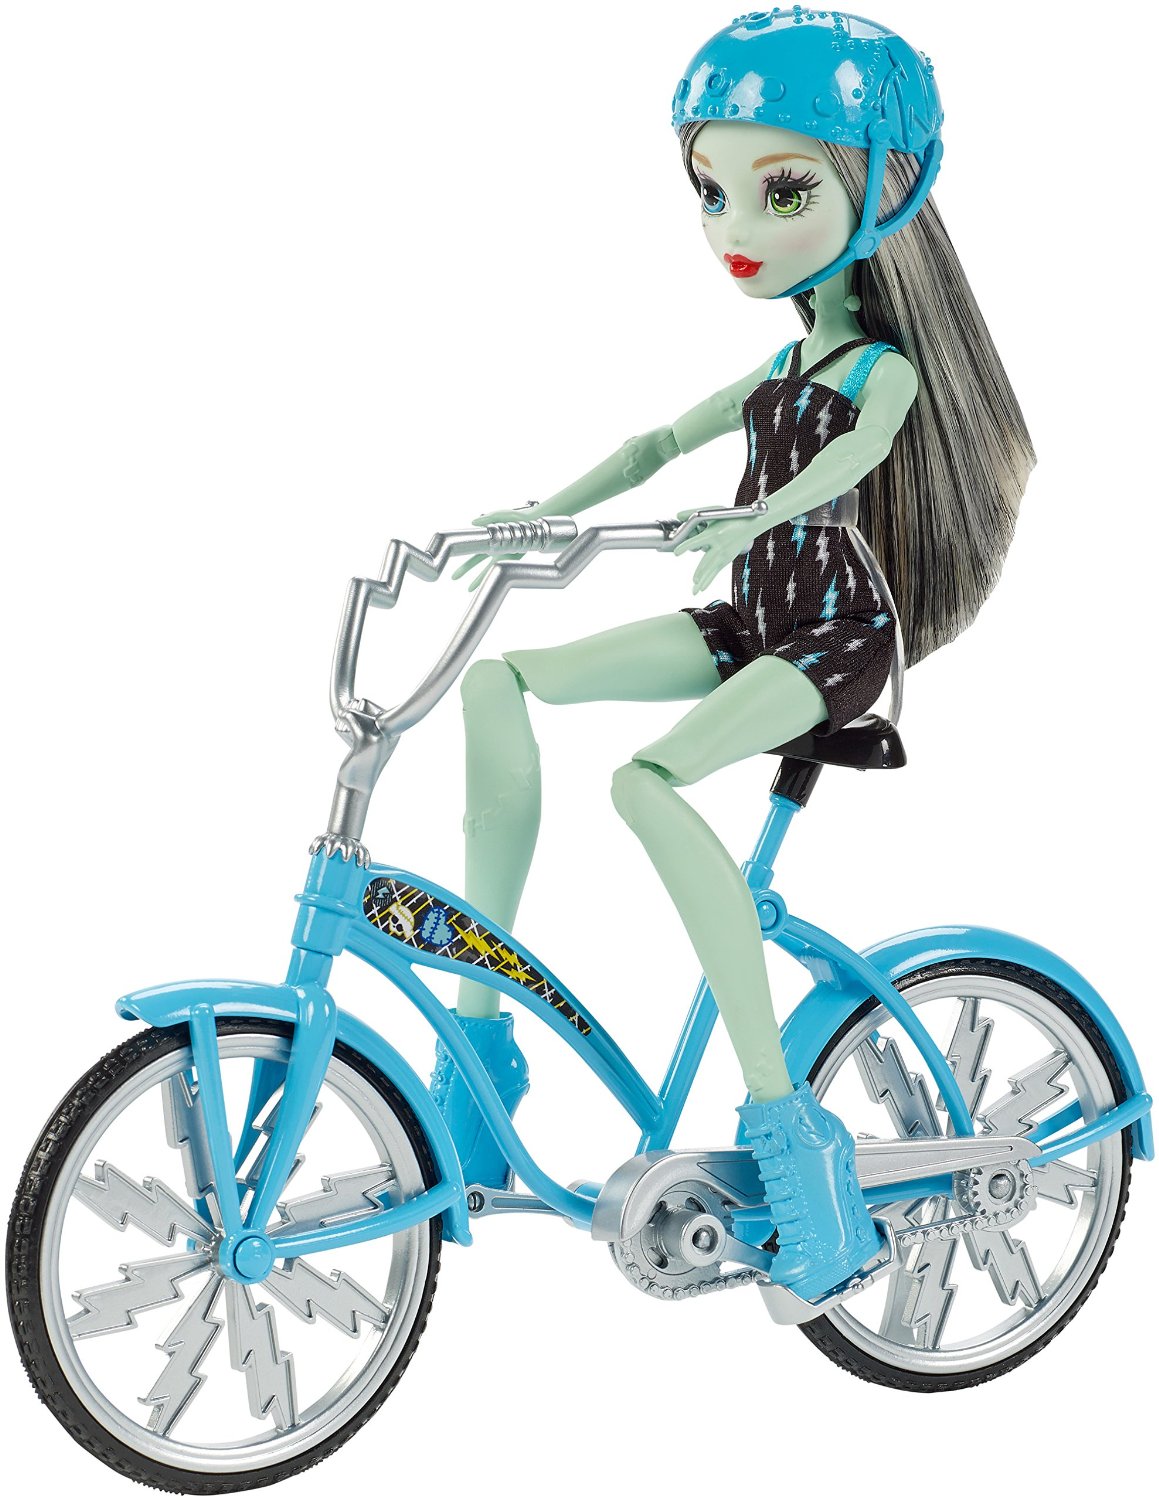 Búp bê quái vật xe đạp Frankie Stein - Monster High Boltin' Bicycle Frankie Stein Doll & Vehicle